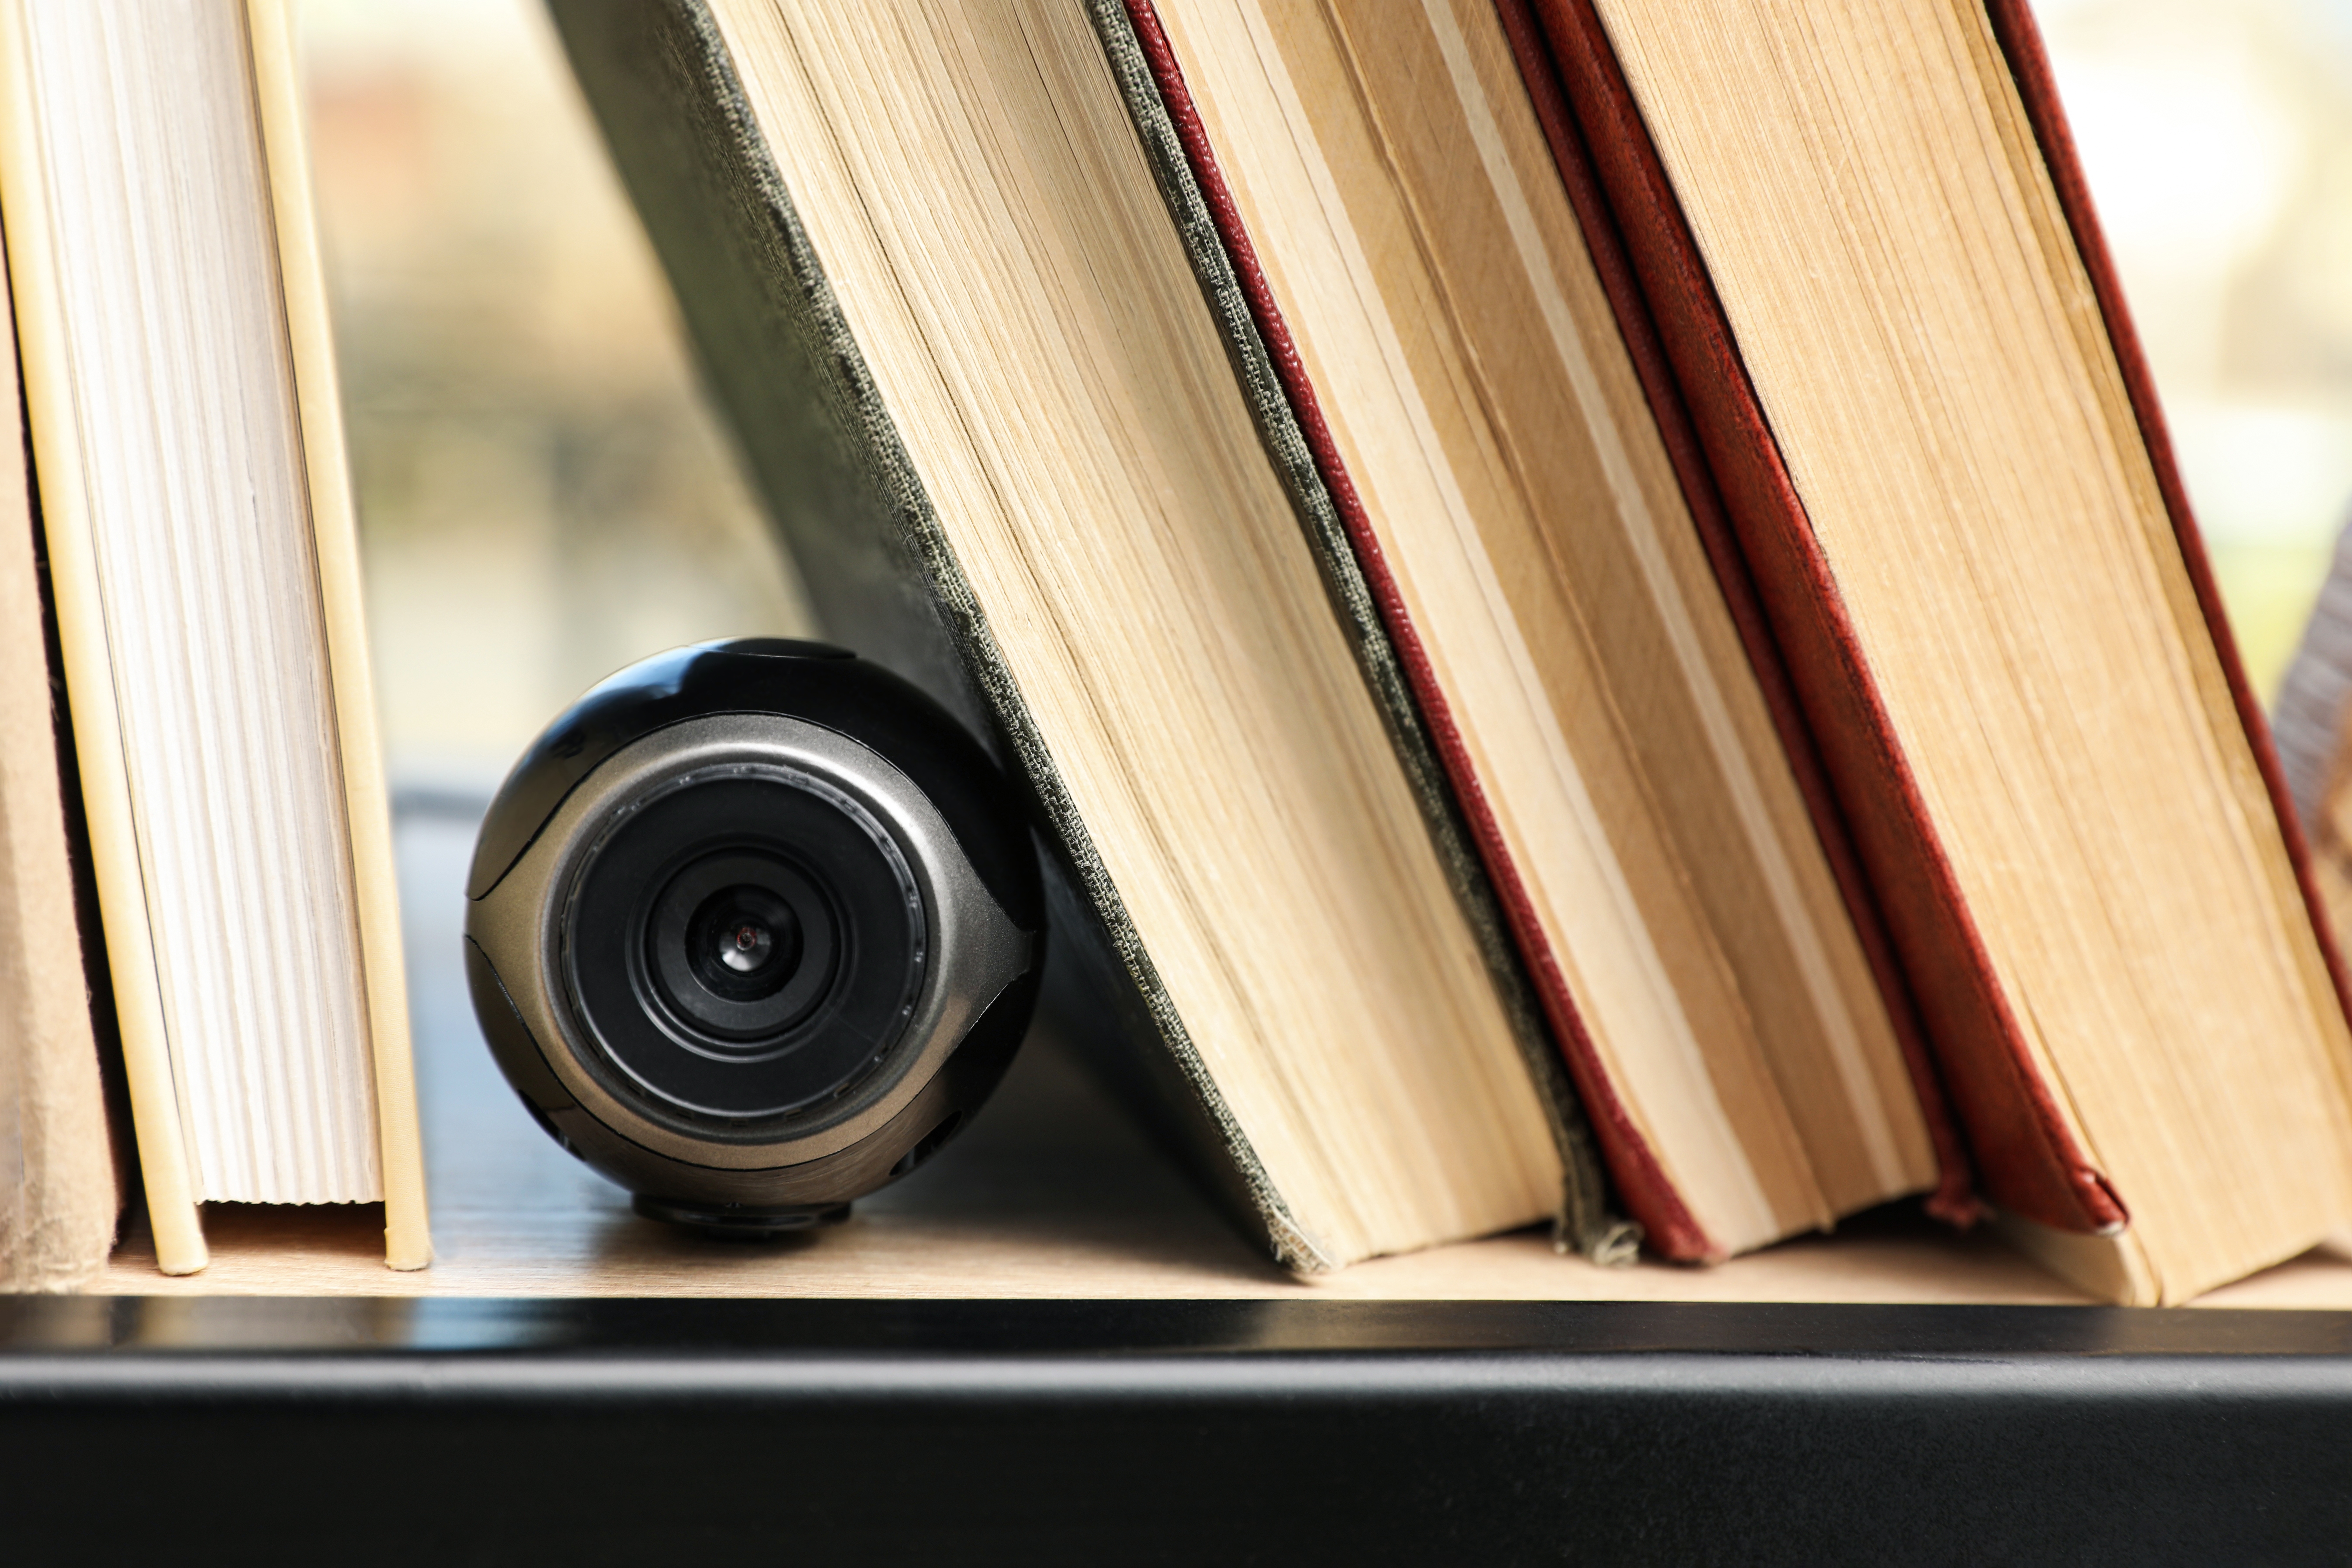 A camera hidden amongst books | Source: Shutterstock